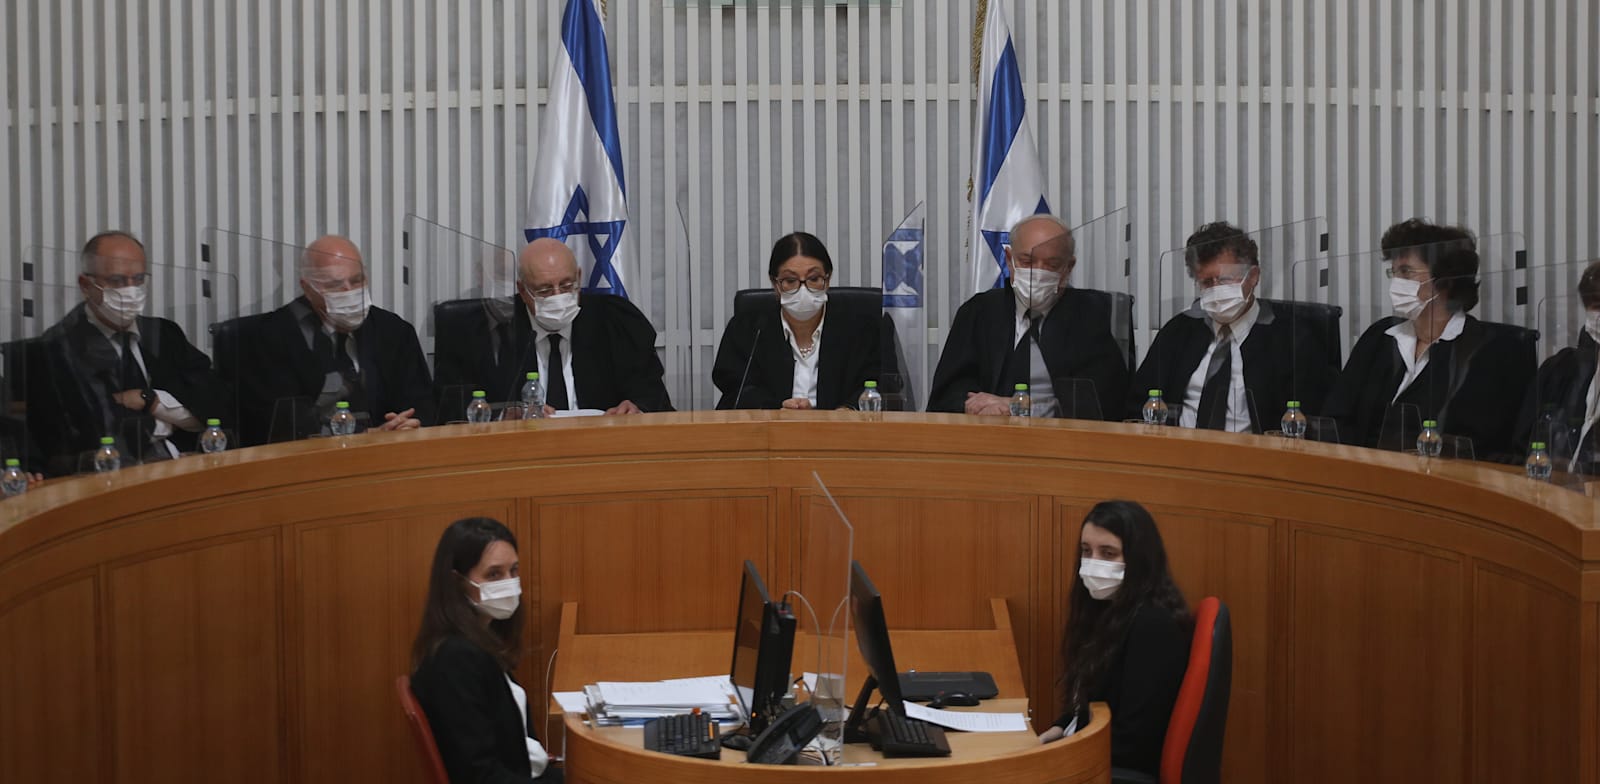 שופטי בית המשפט העליון. האמון של הציבור היהודי במערכת המשפט ממשיך לרדת / צילום: אמיל סלמן-הארץ